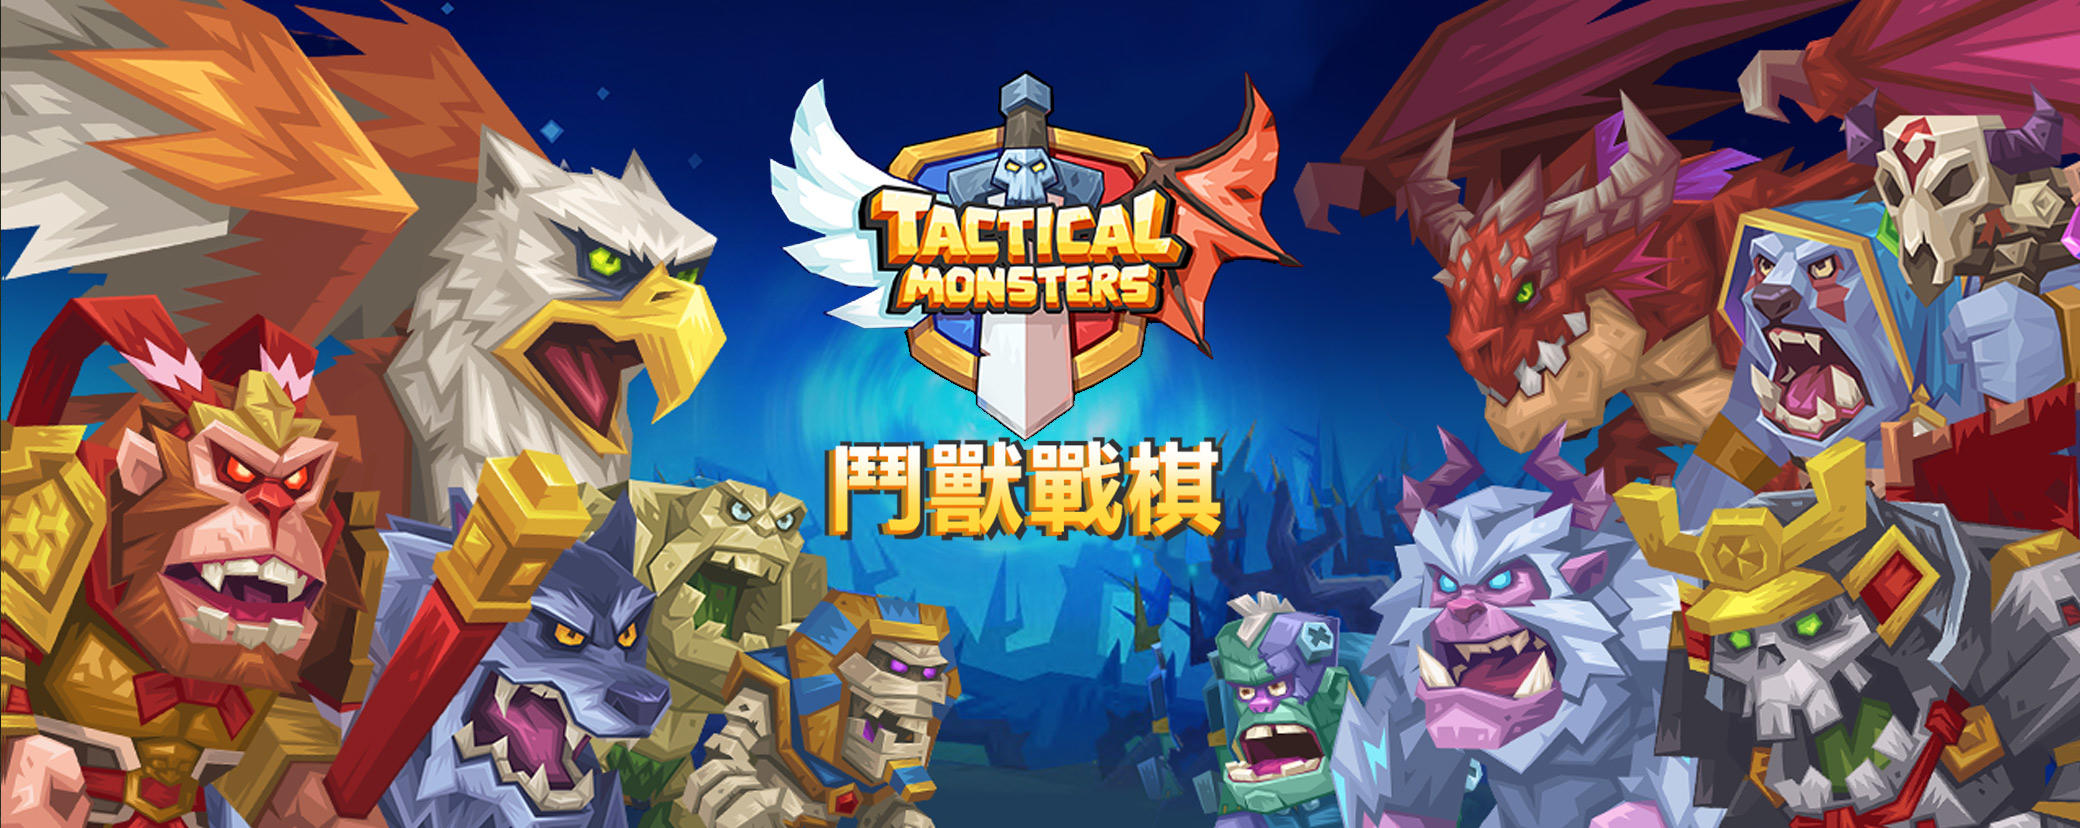 Banner of タクティカル モンスターズ Tactical Monsters Rumble Arena 